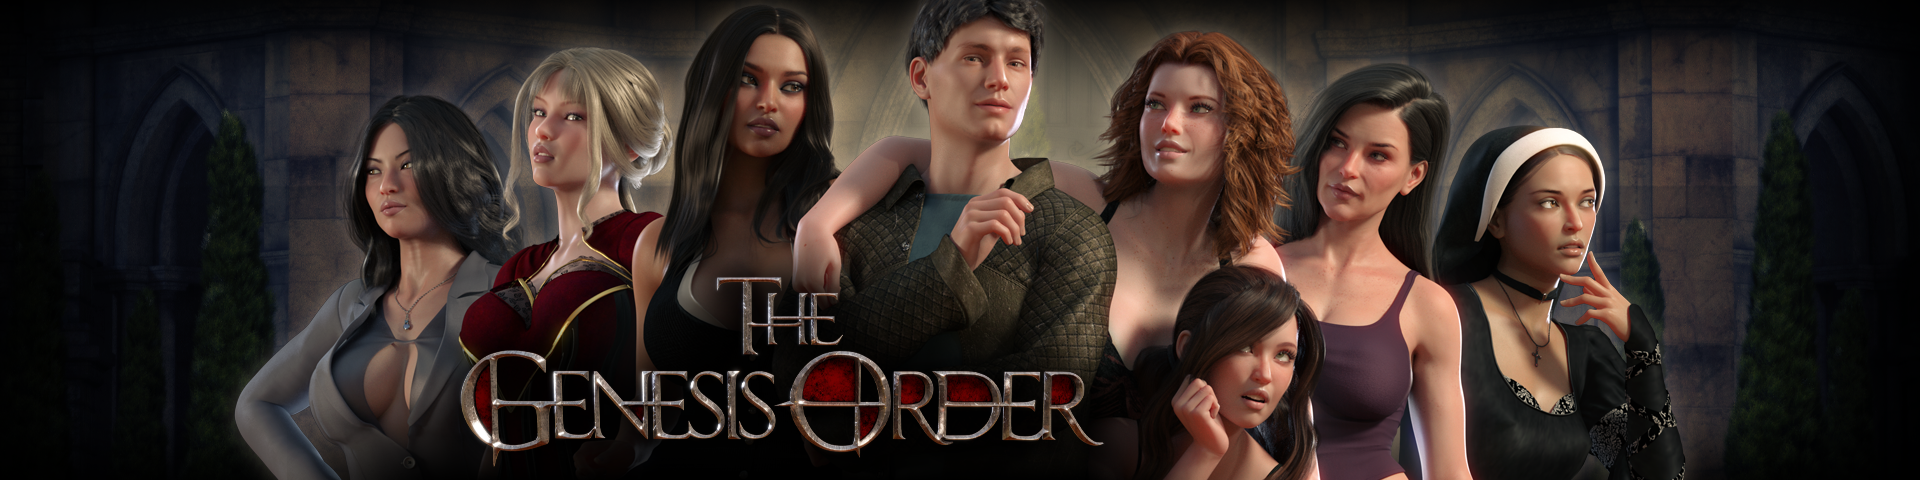 The-genesis-order